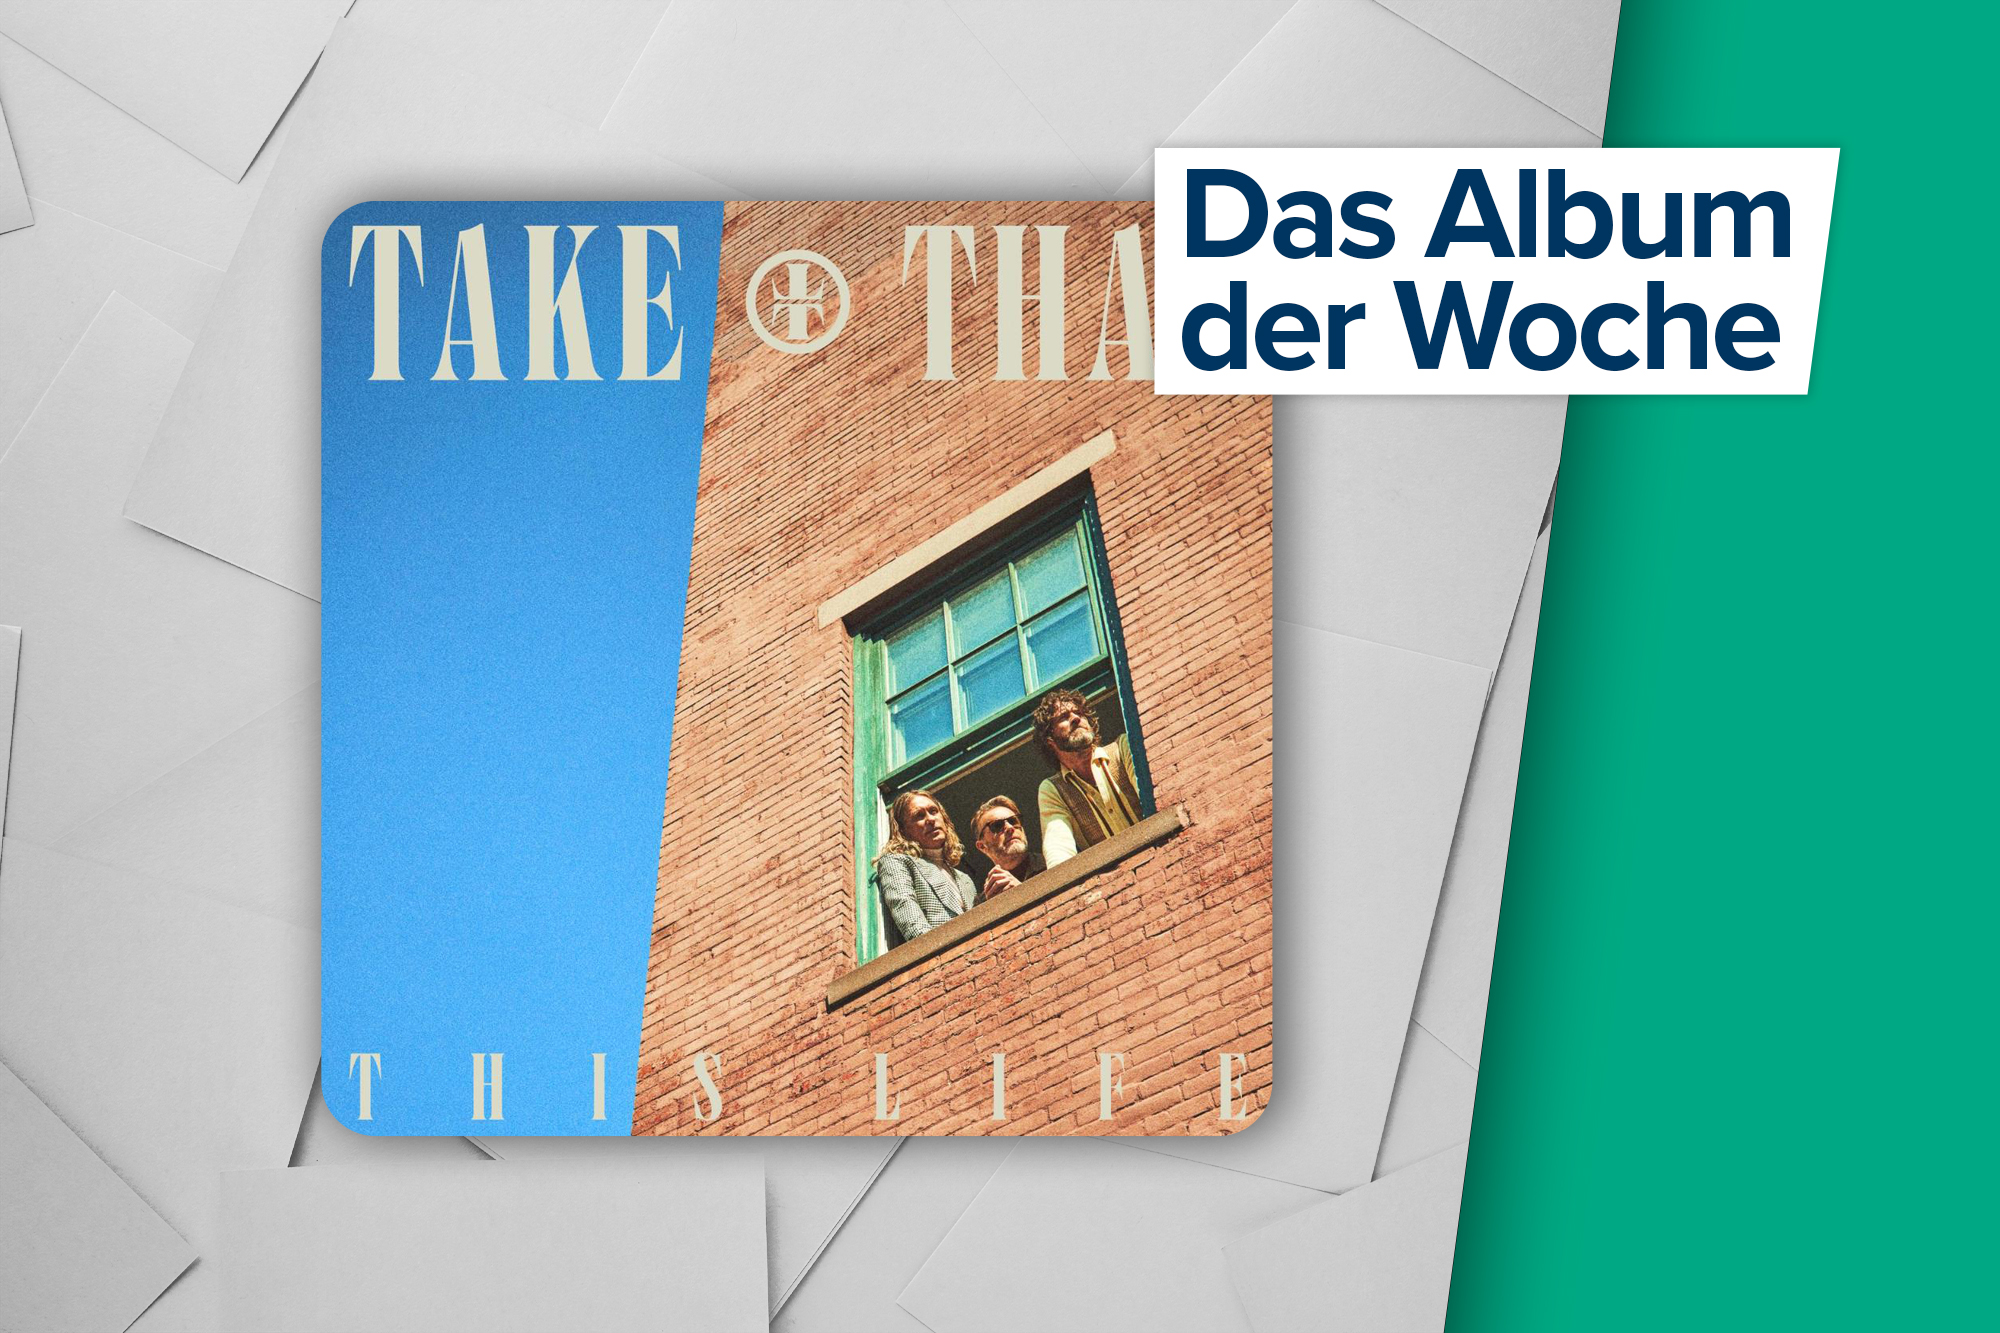 Album der Woche: "This Life" von Take That (UMI / EMI)